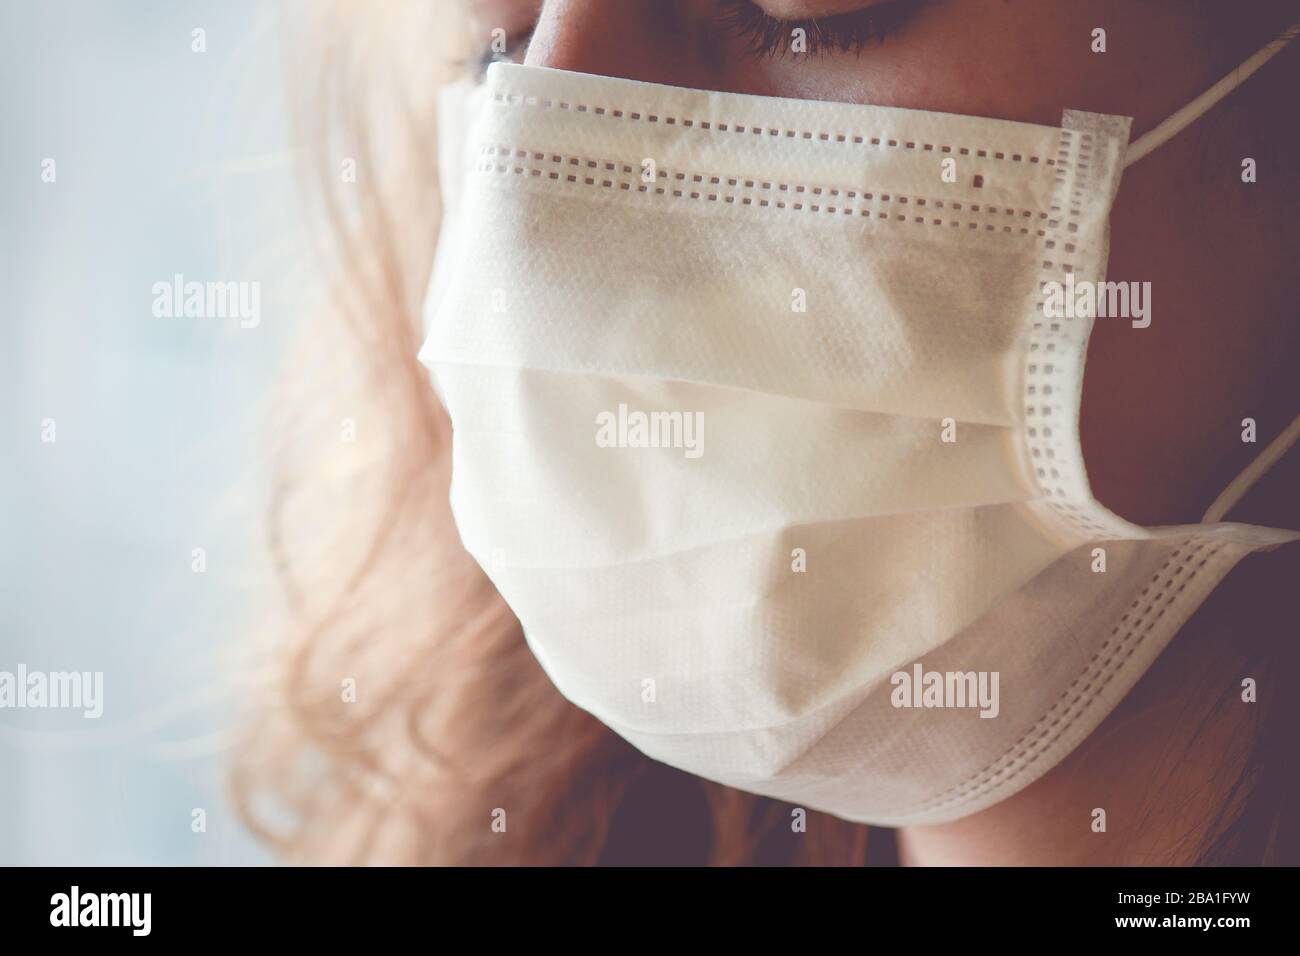 Detail der kaukasischen Frau, die eine weiße medizinische Gesichtsmaske trägt. Frau weint, geschlossene Augen. Fokussieren Sie den vorderen Teil des Gesichts und den verschwommenen Hintergrund. Coronavirus, COVID-19 Quarantäne. Pflegekonzept. Stockfoto